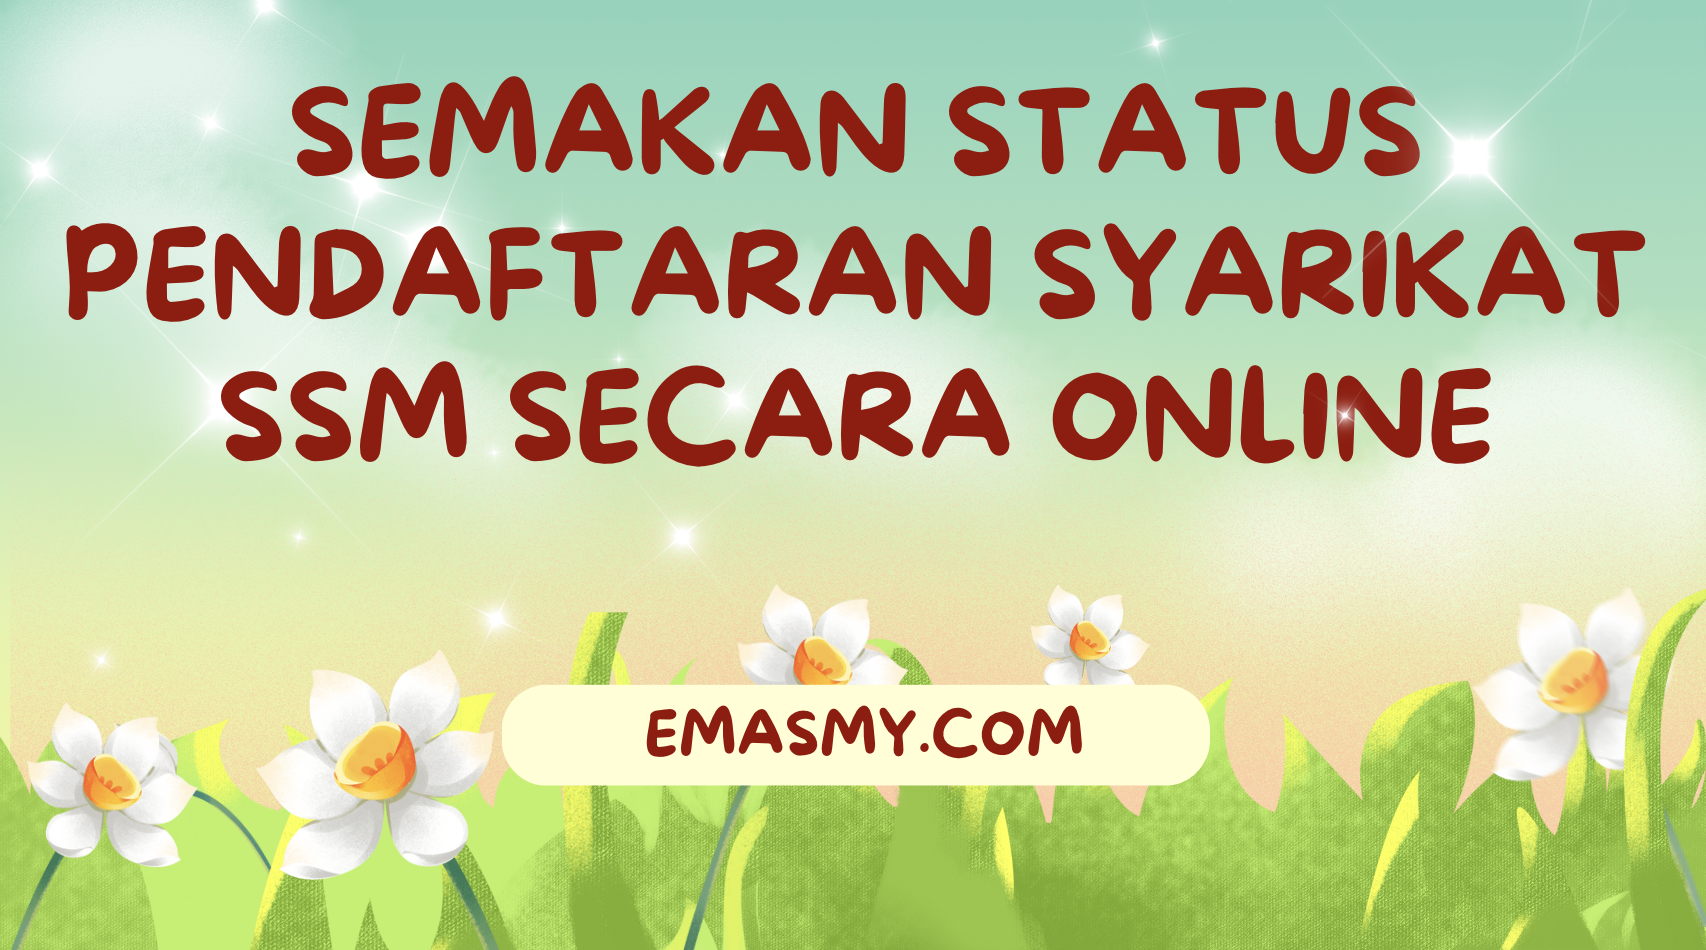 Semakan Status Pendaftaran Syarikat SSM secara Online